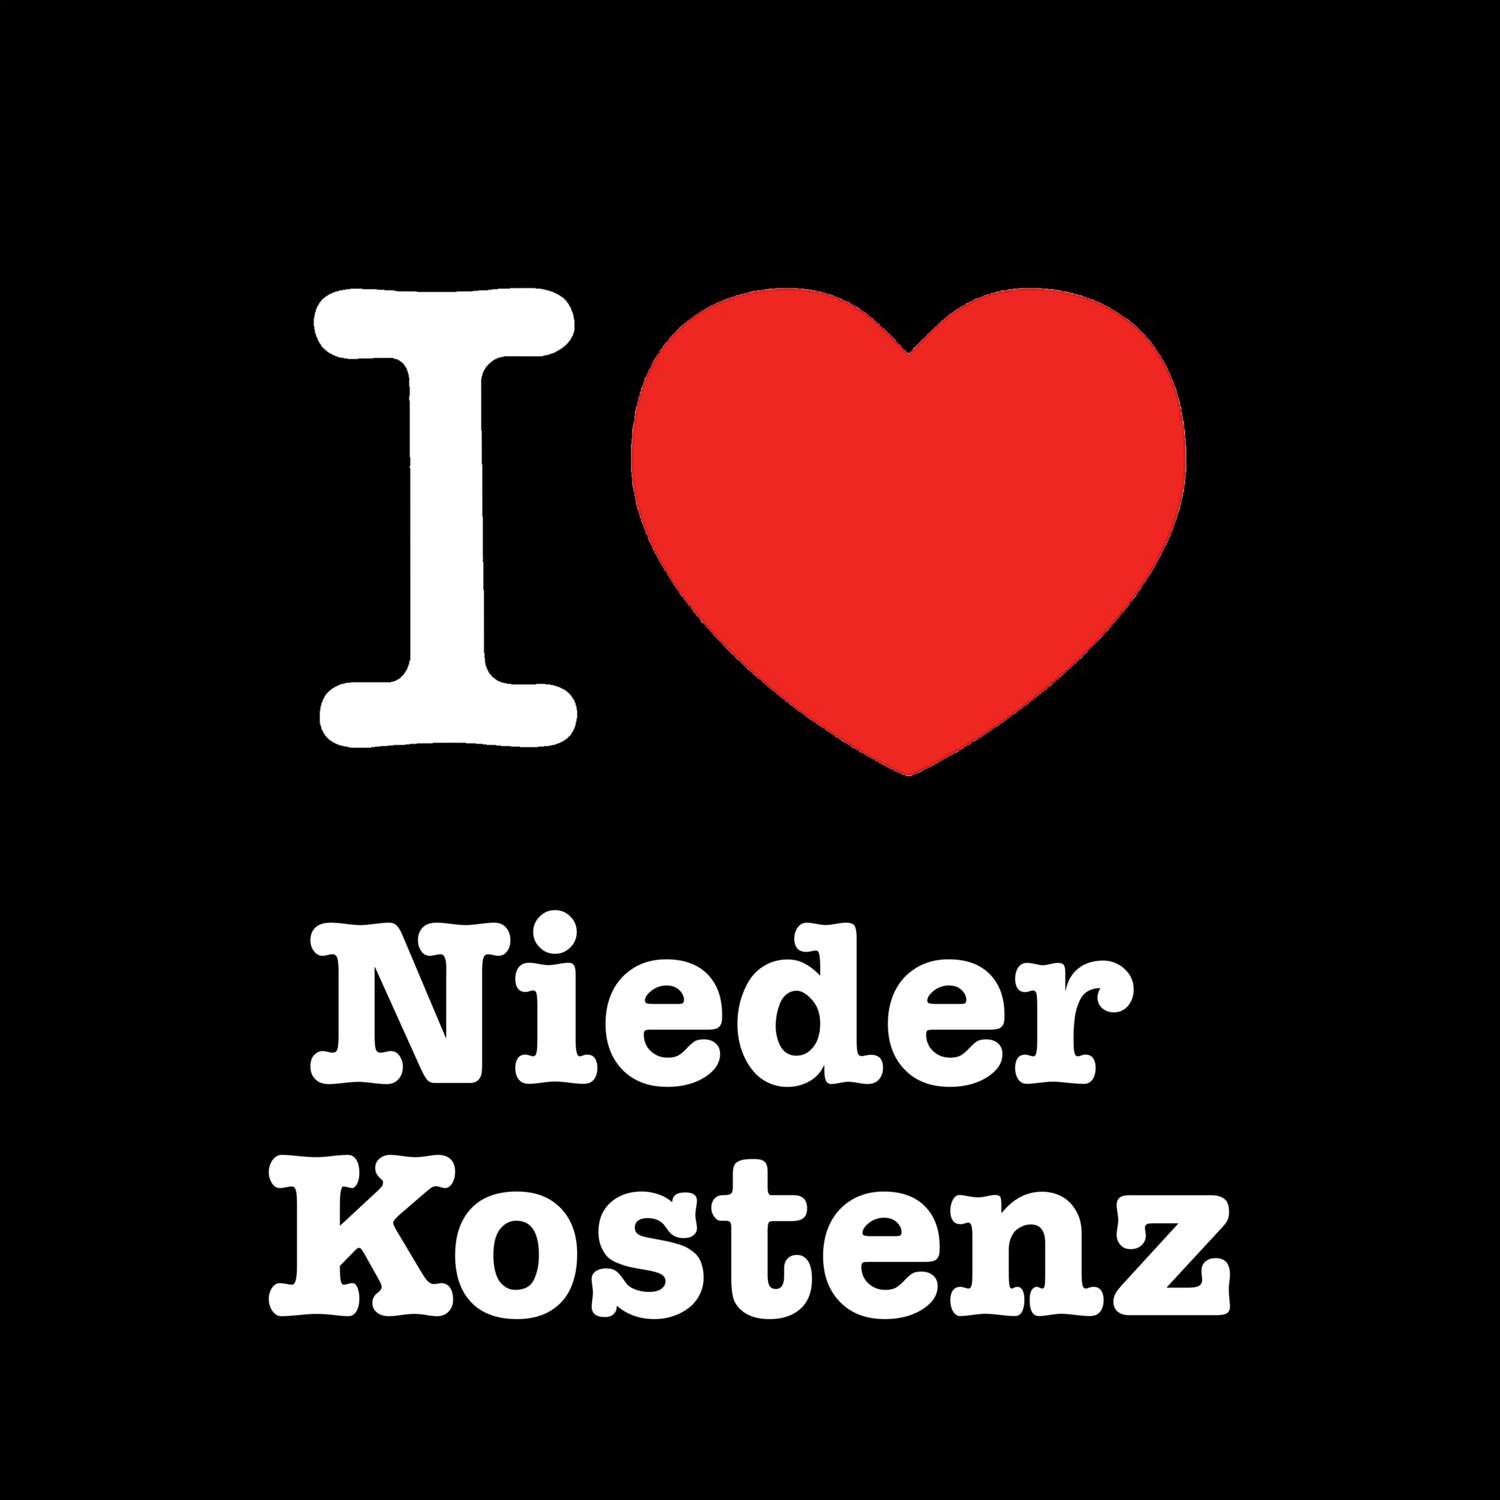 Nieder Kostenz T-Shirt »I love«